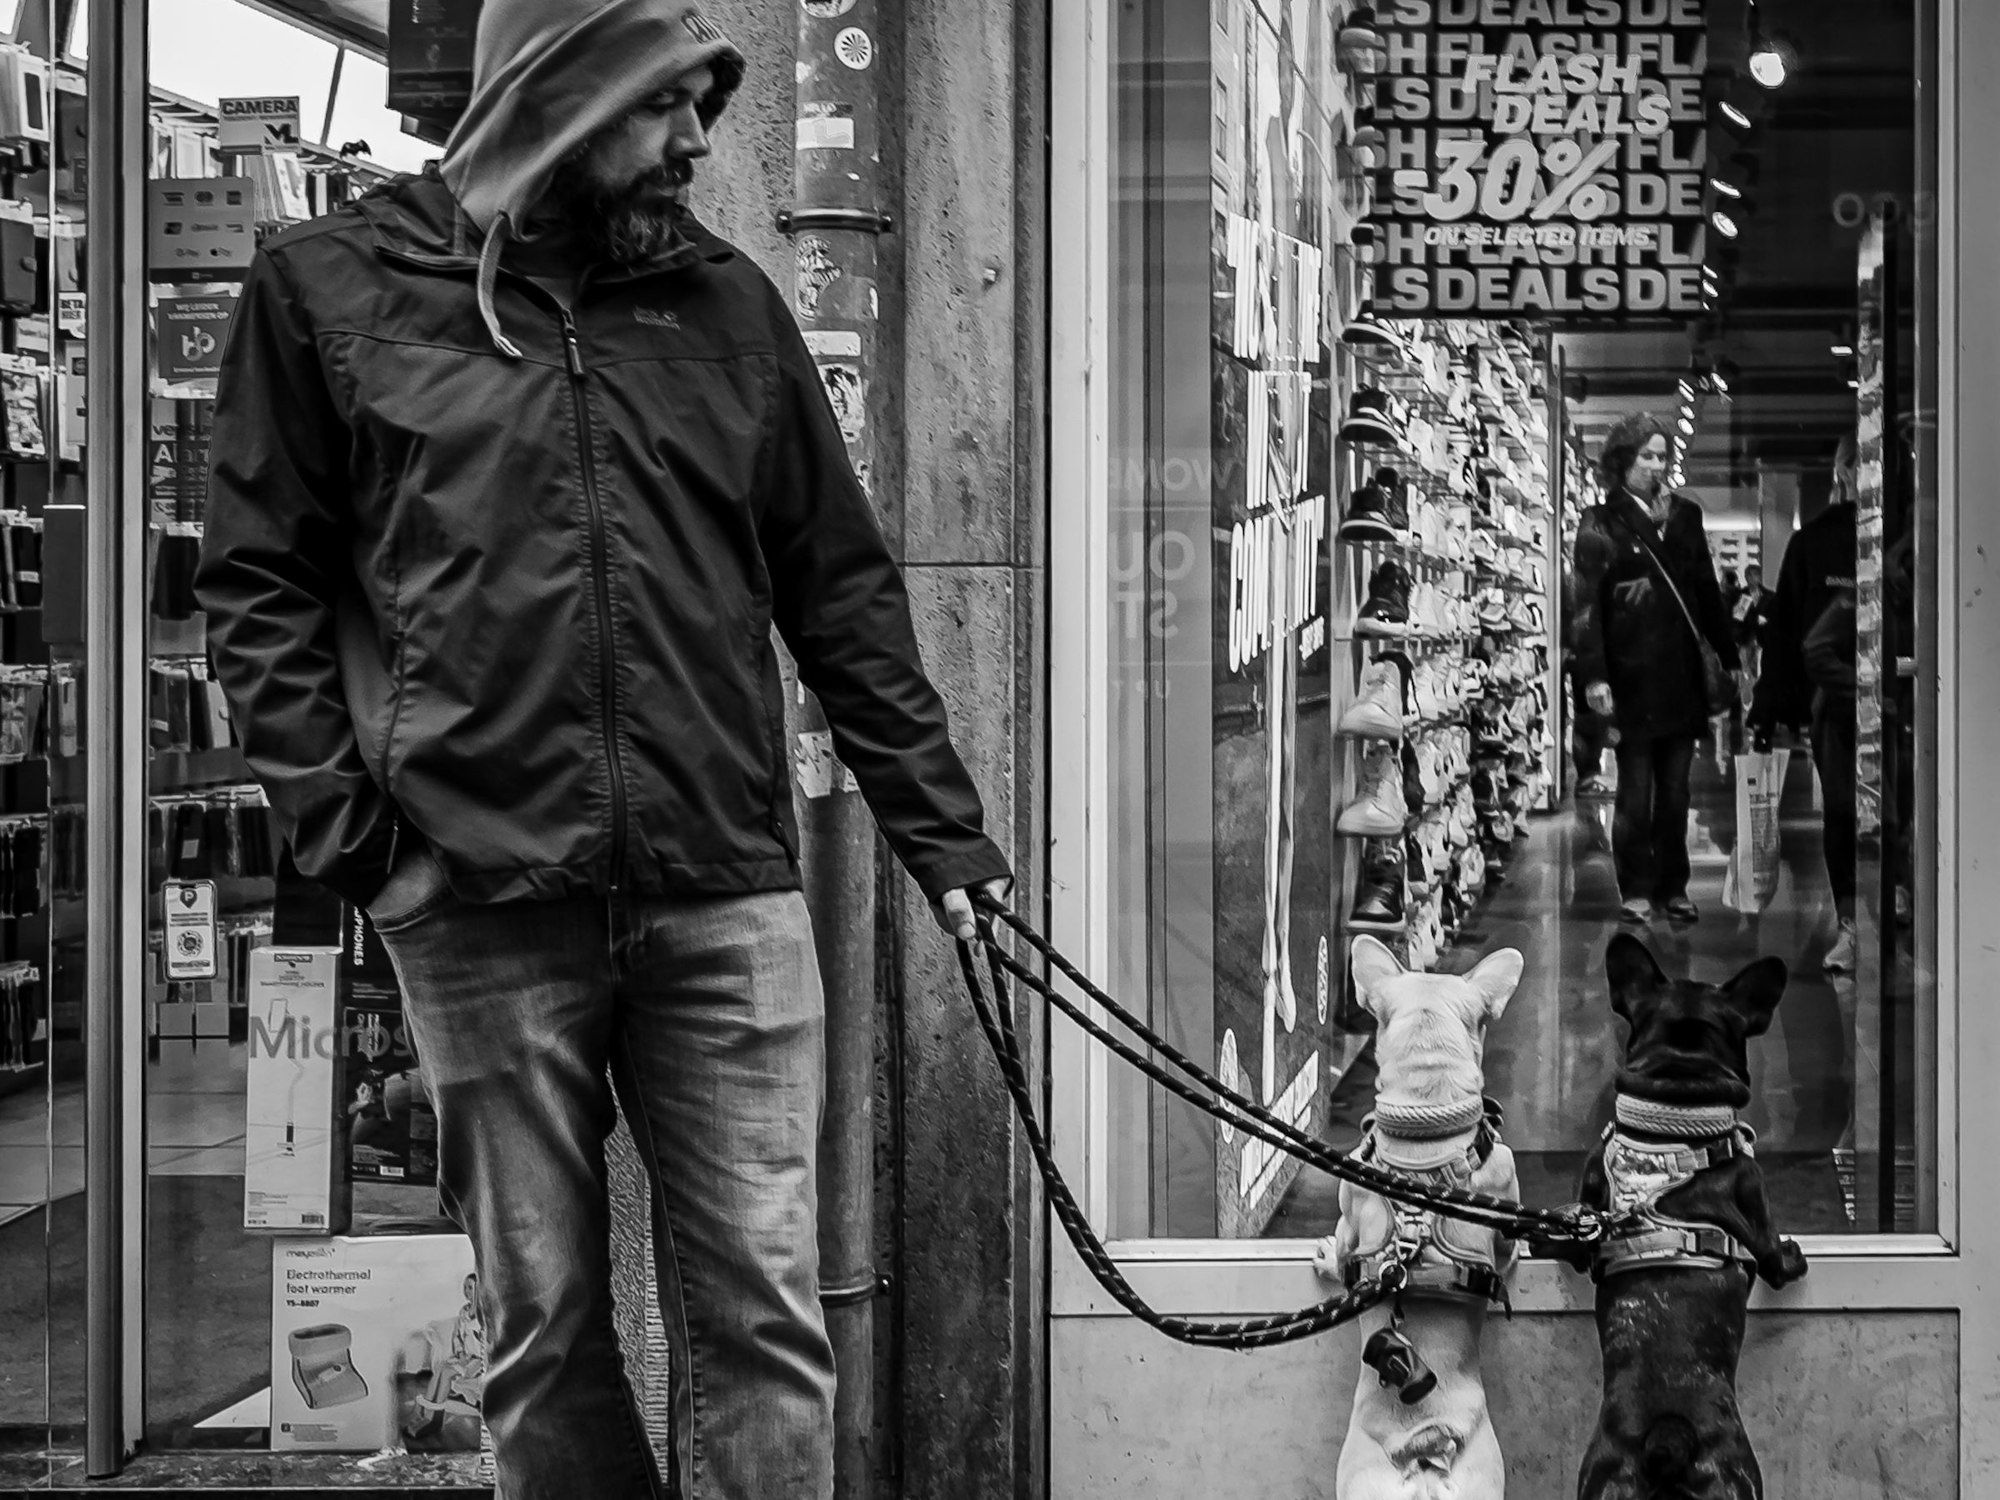 Das Schwarz-Weiß-Foto zeigt einen Mann, der zwei Hunde an der Leine führt. Diese haben die Vorderpfoten auf den Rahmen eines Schaufensters gestützt und schauen in ein Geschäft.